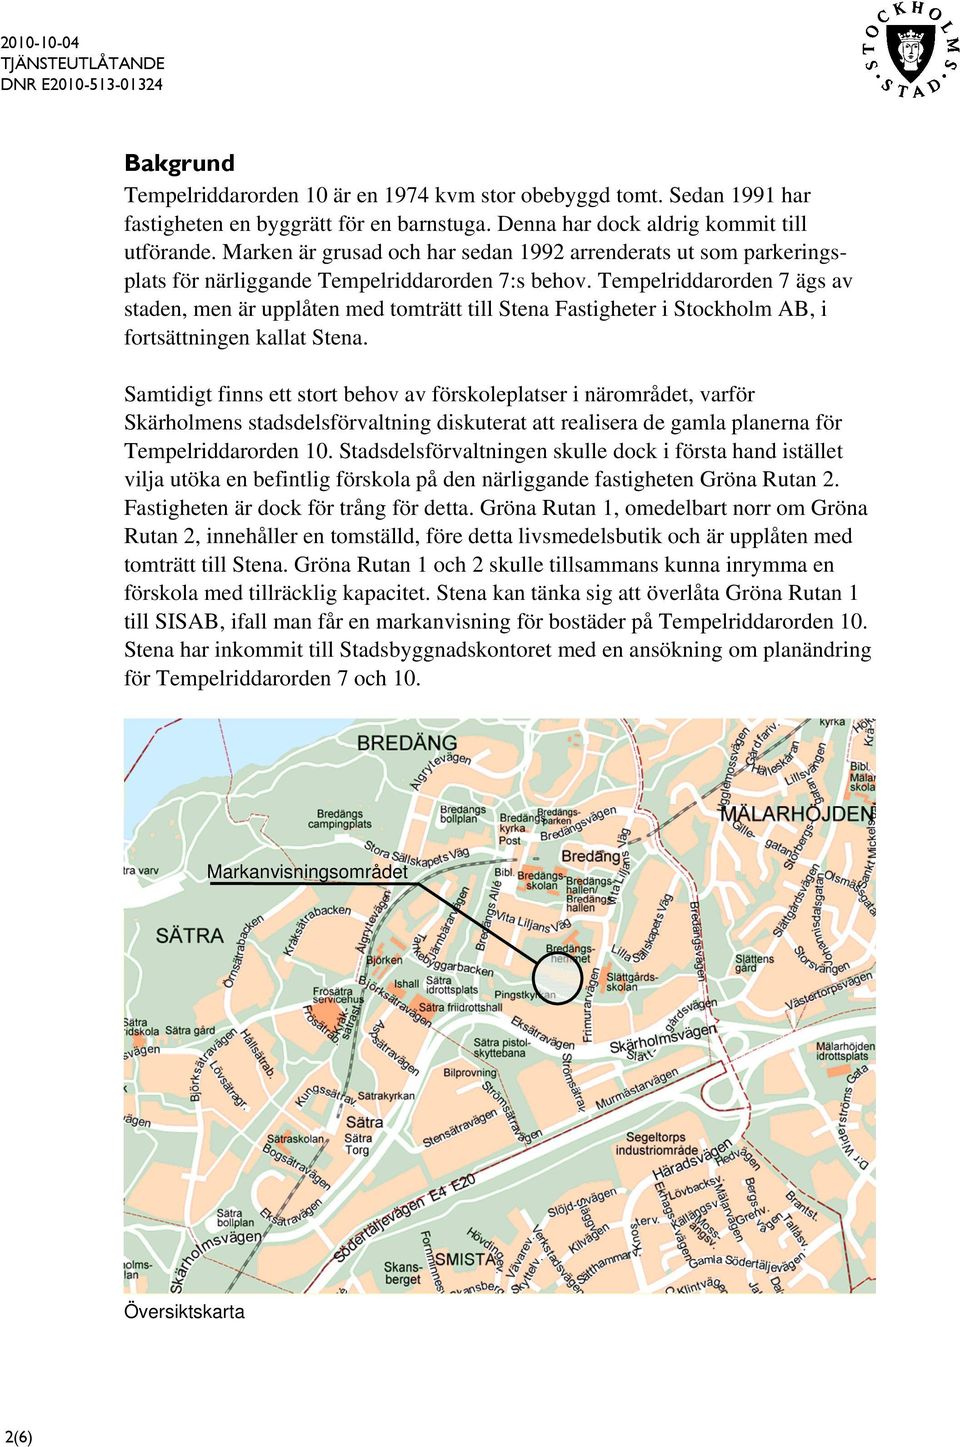 Tempelriddarorden 7 ägs av staden, men är upplåten med tomträtt till Stena Fastigheter i Stockholm AB, i fortsättningen kallat Stena.